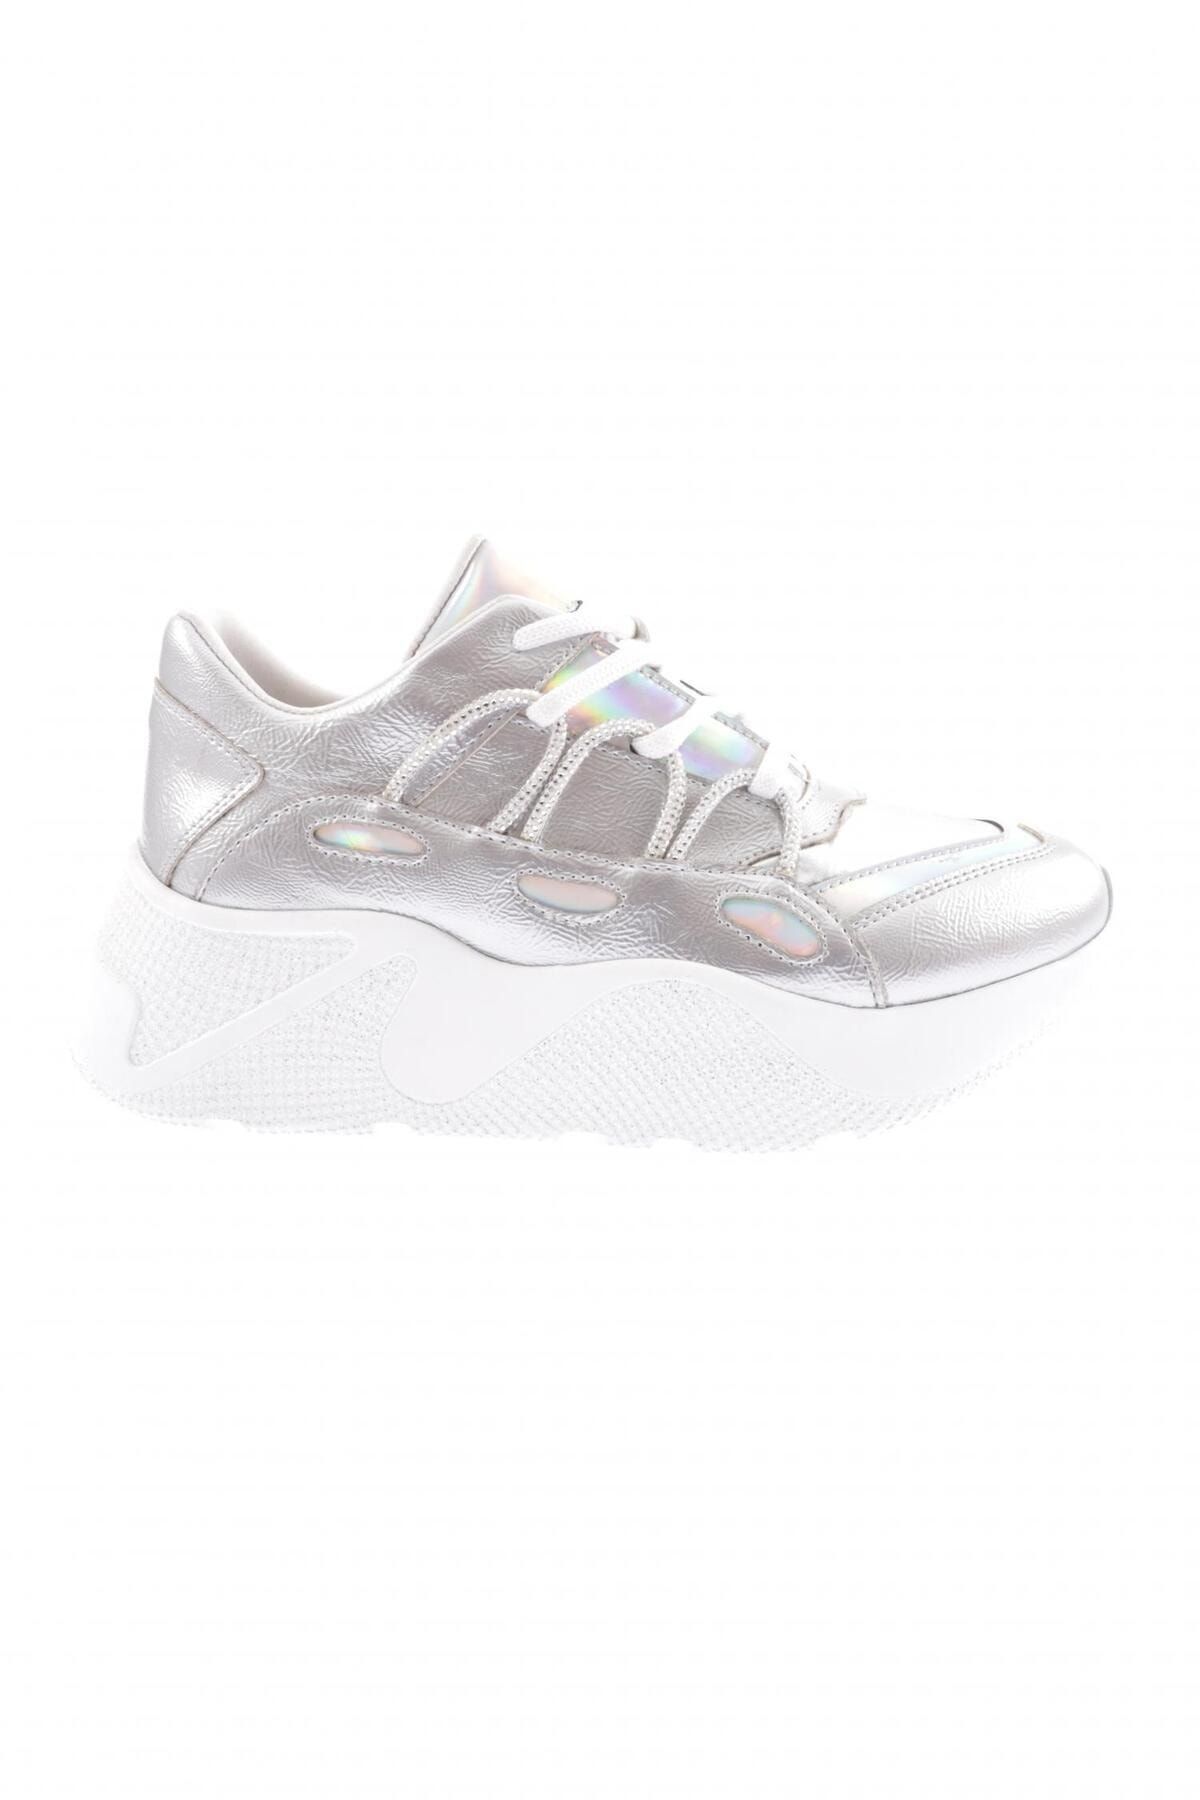 Dgn 916-23y Kadın Kalın Taban Tsilver Ip Taşlı Sneakers Ayakkabı Gümüş